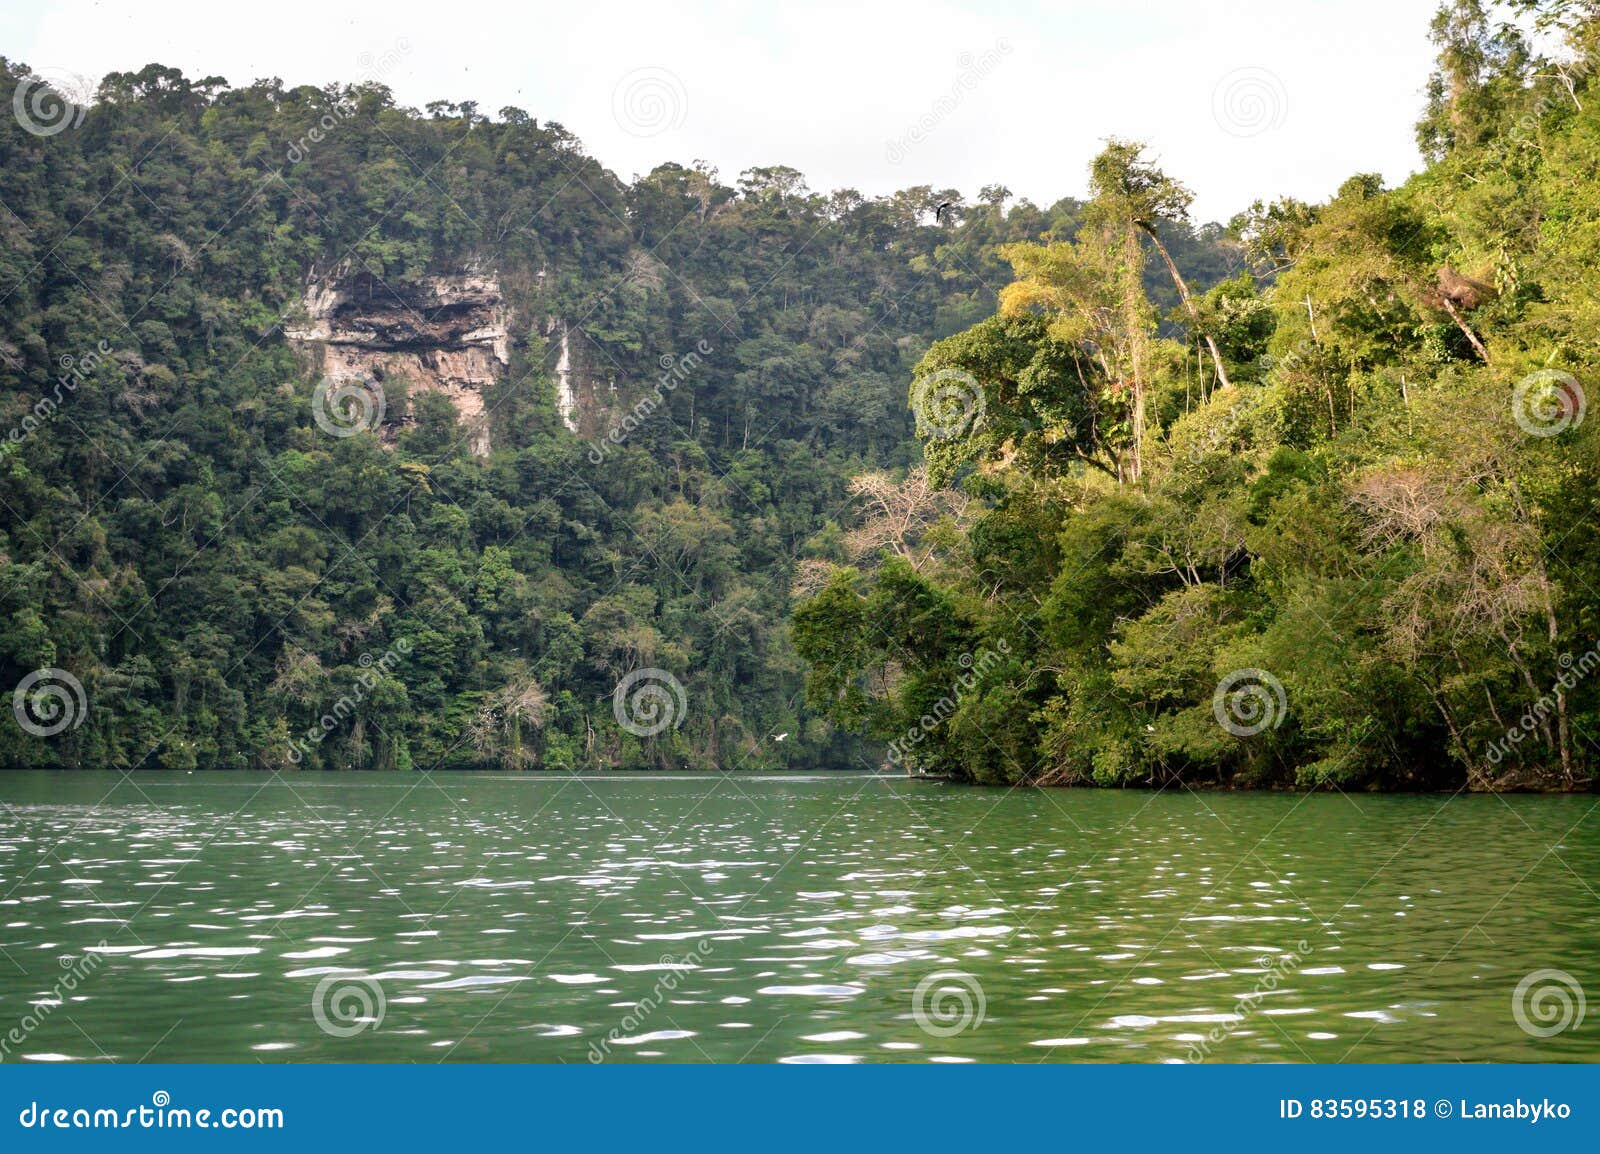 rio dulce landscapes near livingston, guatemala